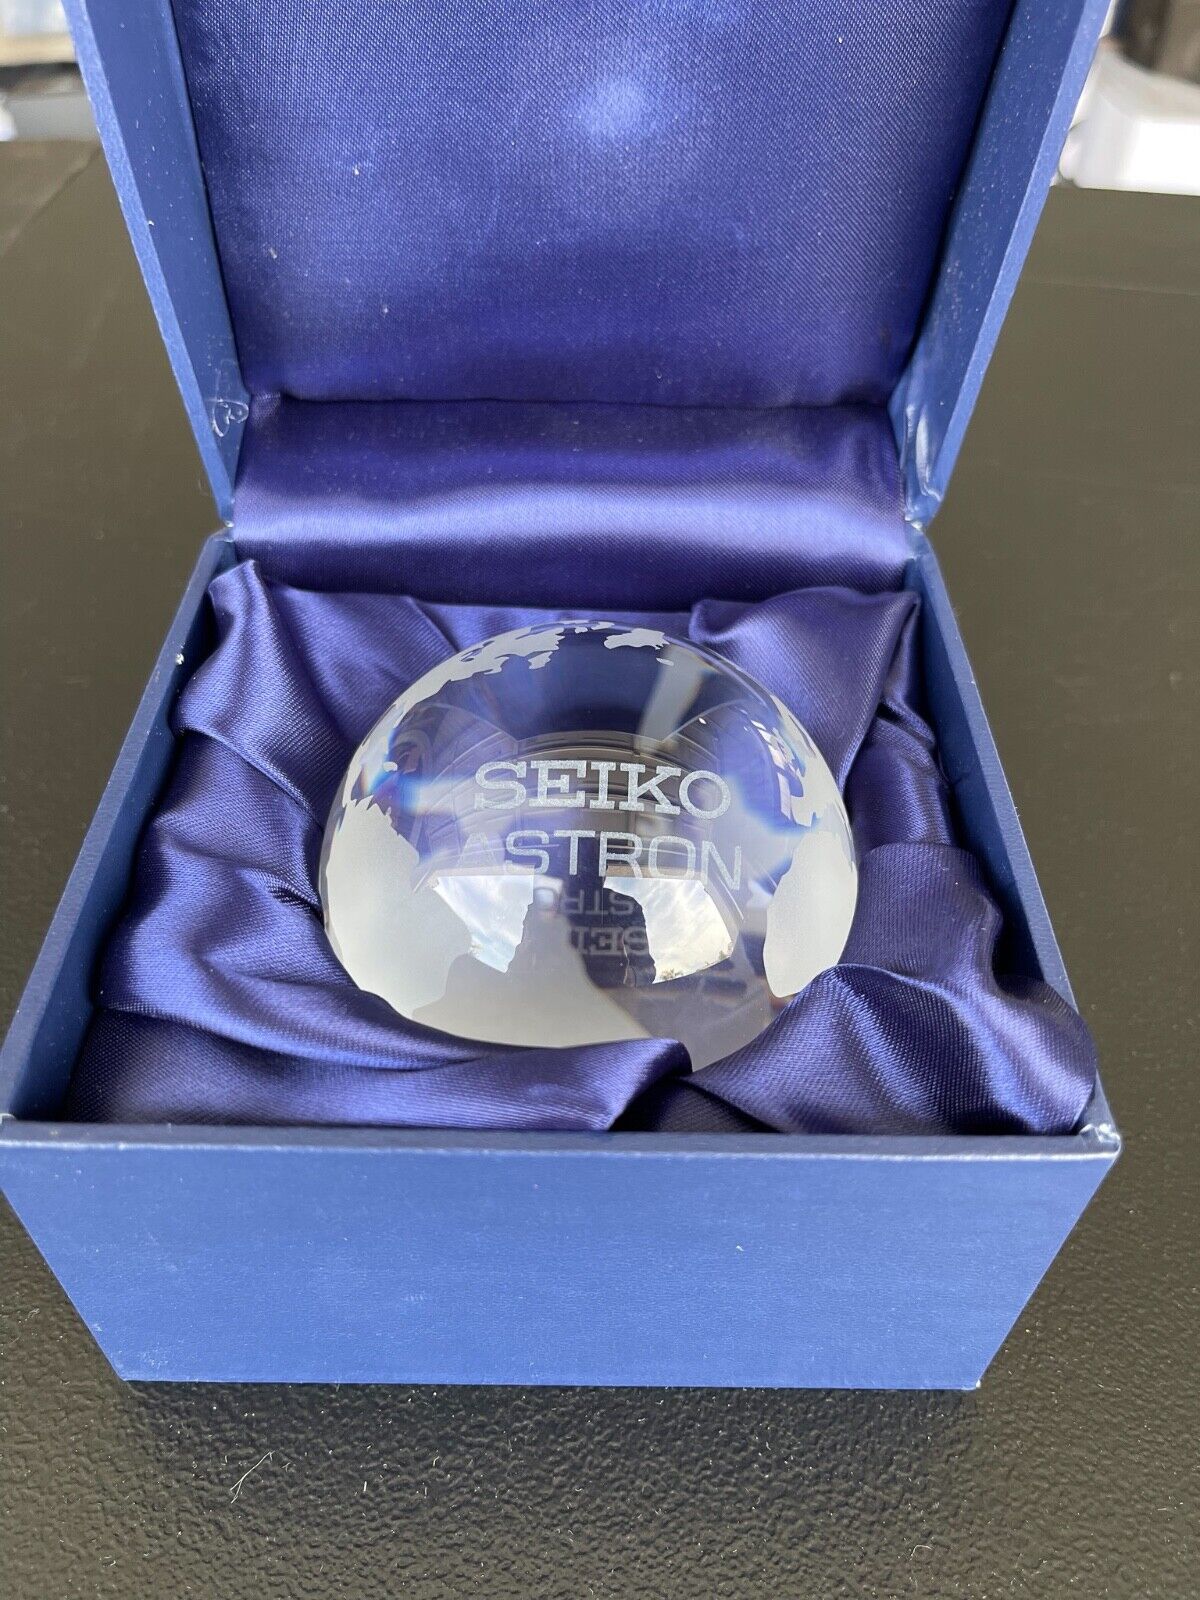 Seiko Astron Official Crystal Globe